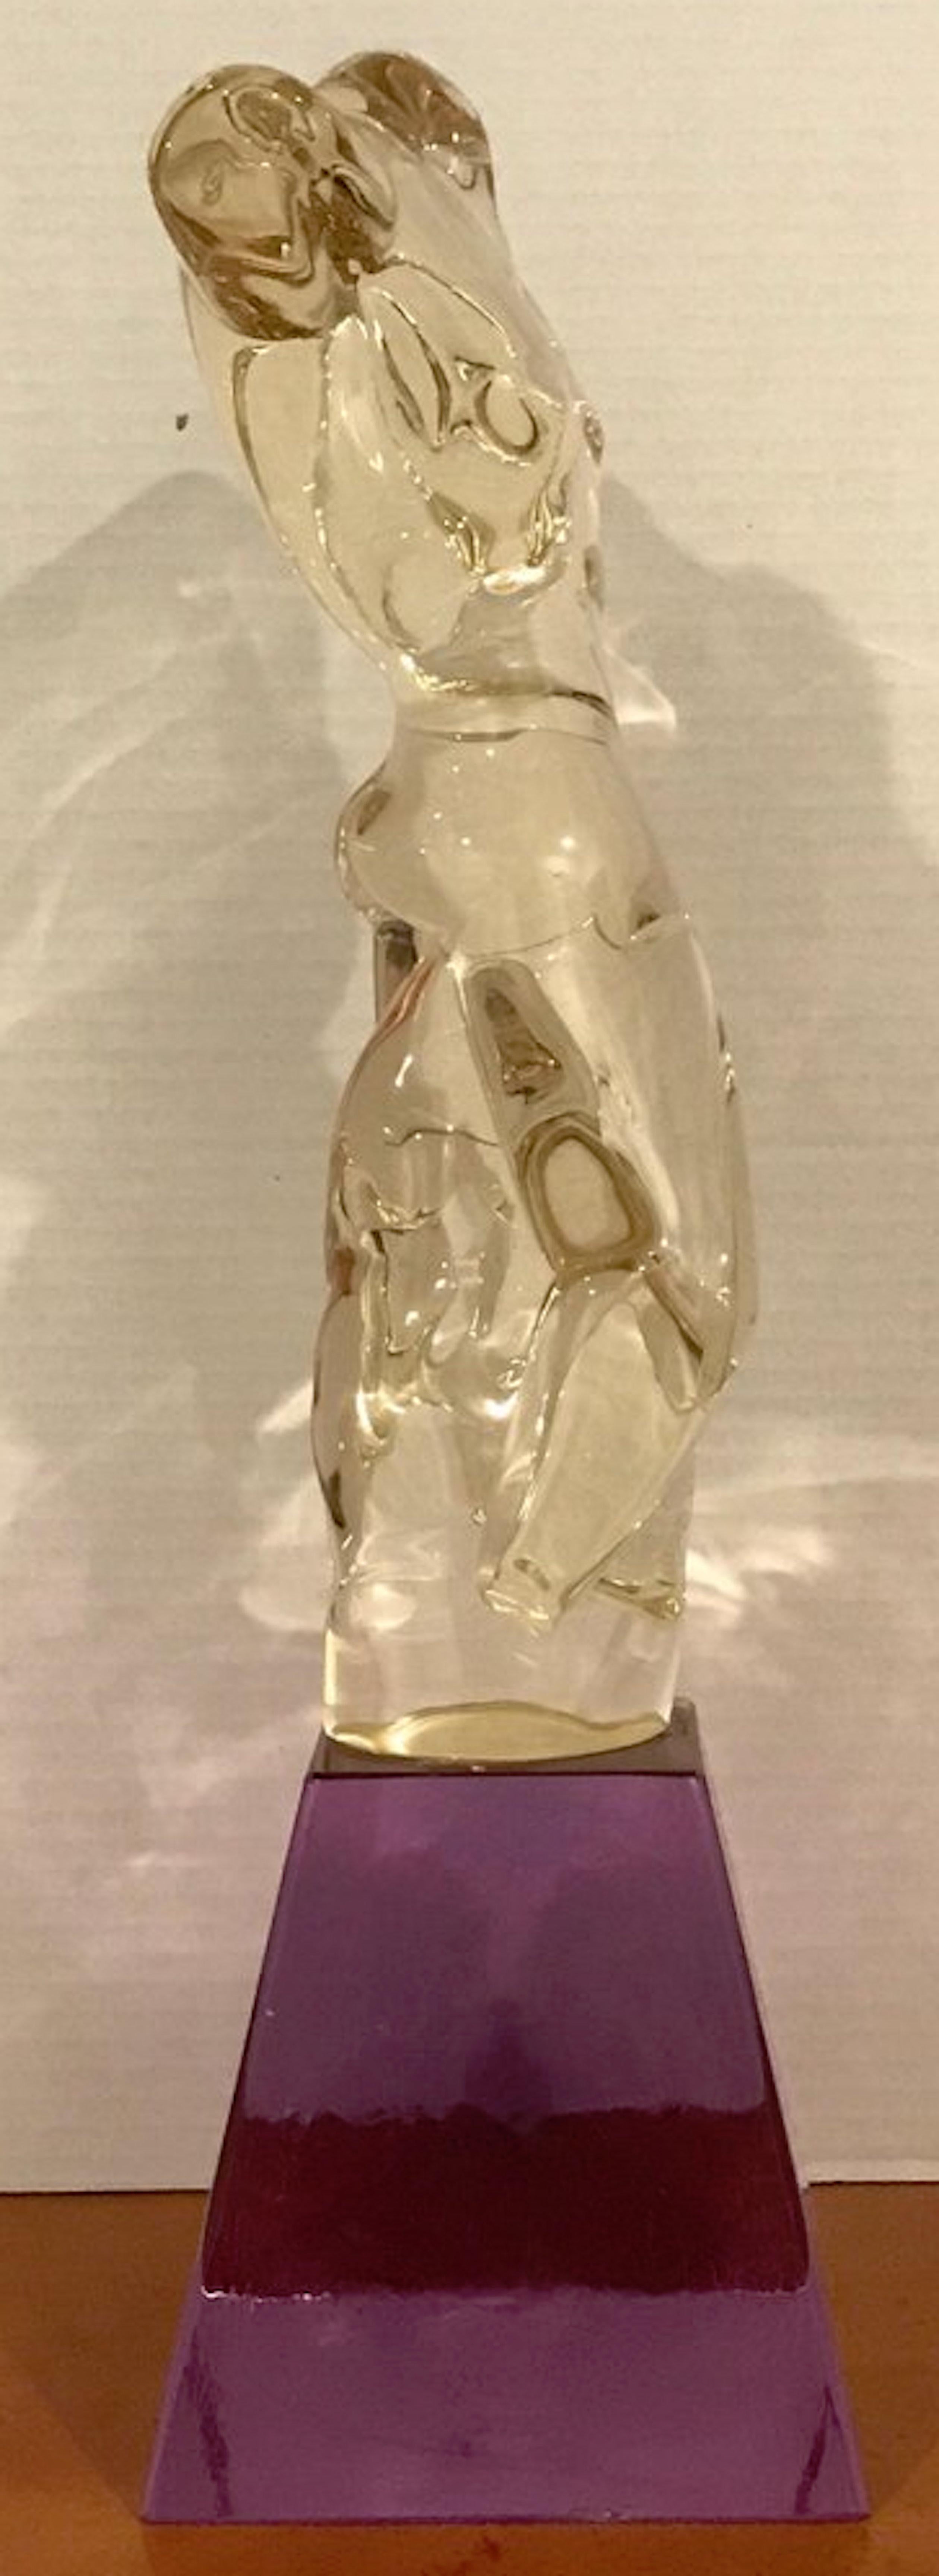 Male Nude Murano Glass Sculpture by Pino Signoretto For Sale 3